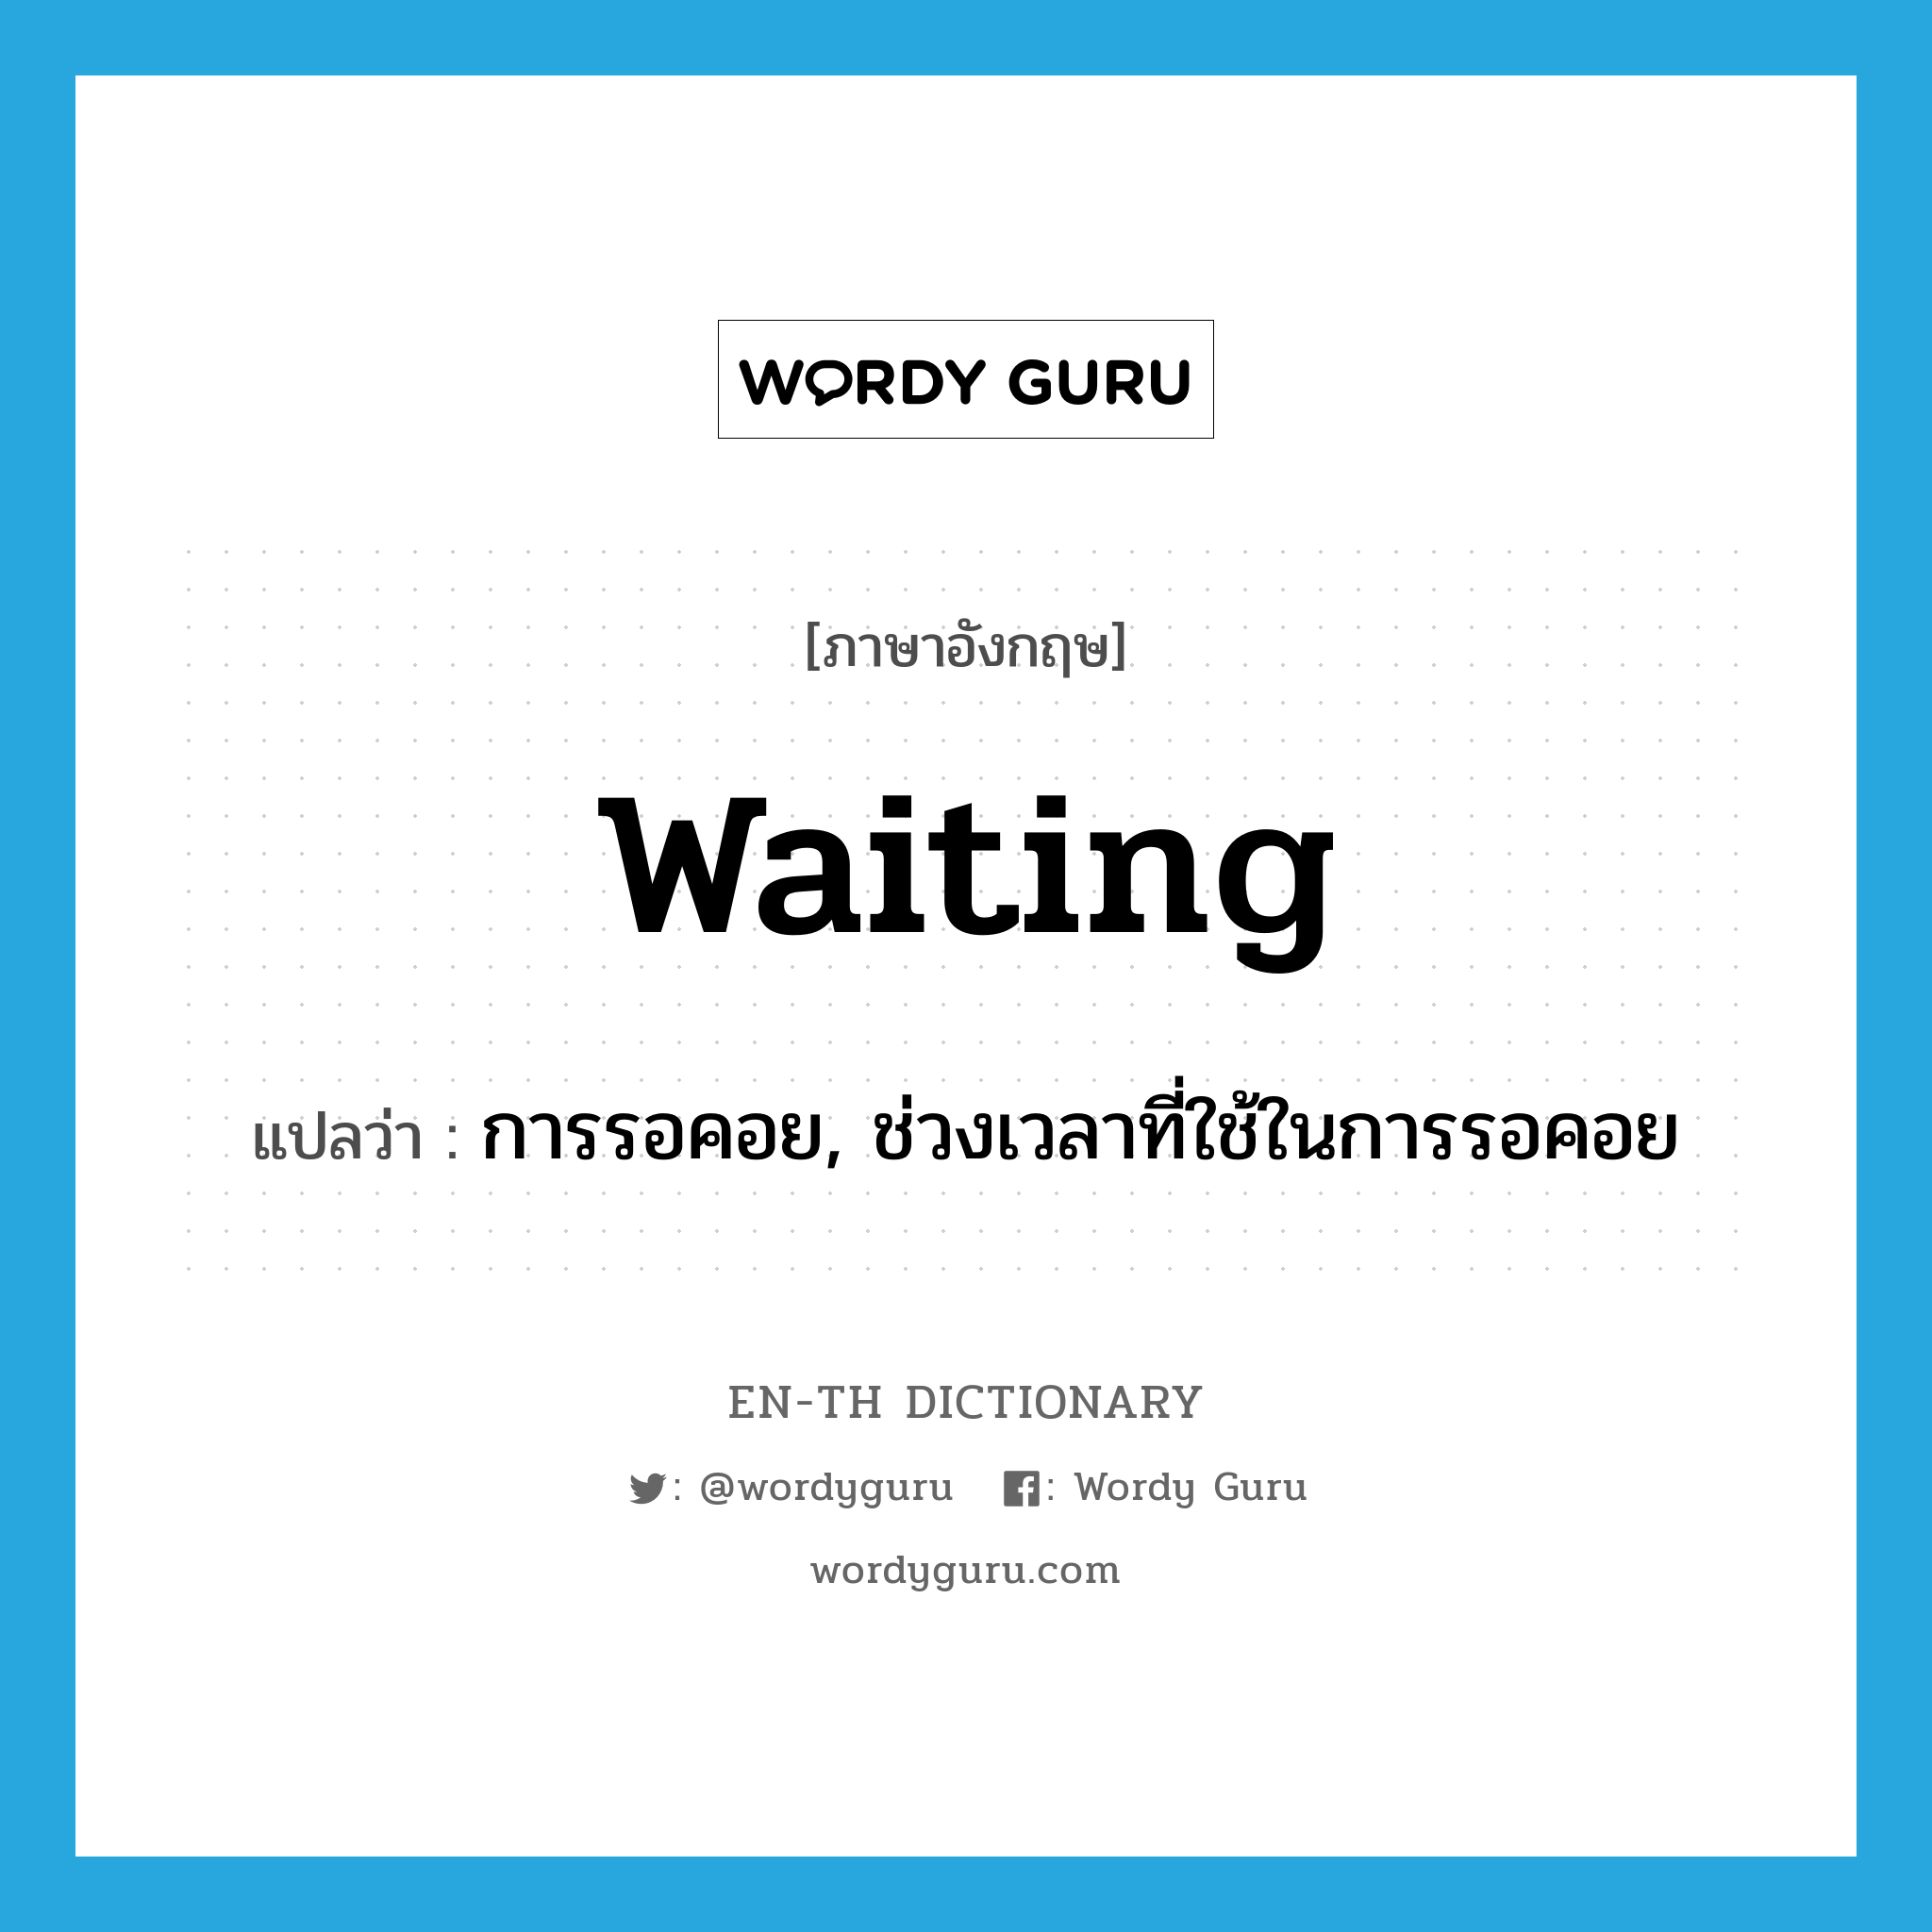 การรอคอย, ช่วงเวลาที่ใช้ในการรอคอย ภาษาอังกฤษ?, คำศัพท์ภาษาอังกฤษ การรอคอย, ช่วงเวลาที่ใช้ในการรอคอย แปลว่า waiting ประเภท N หมวด N